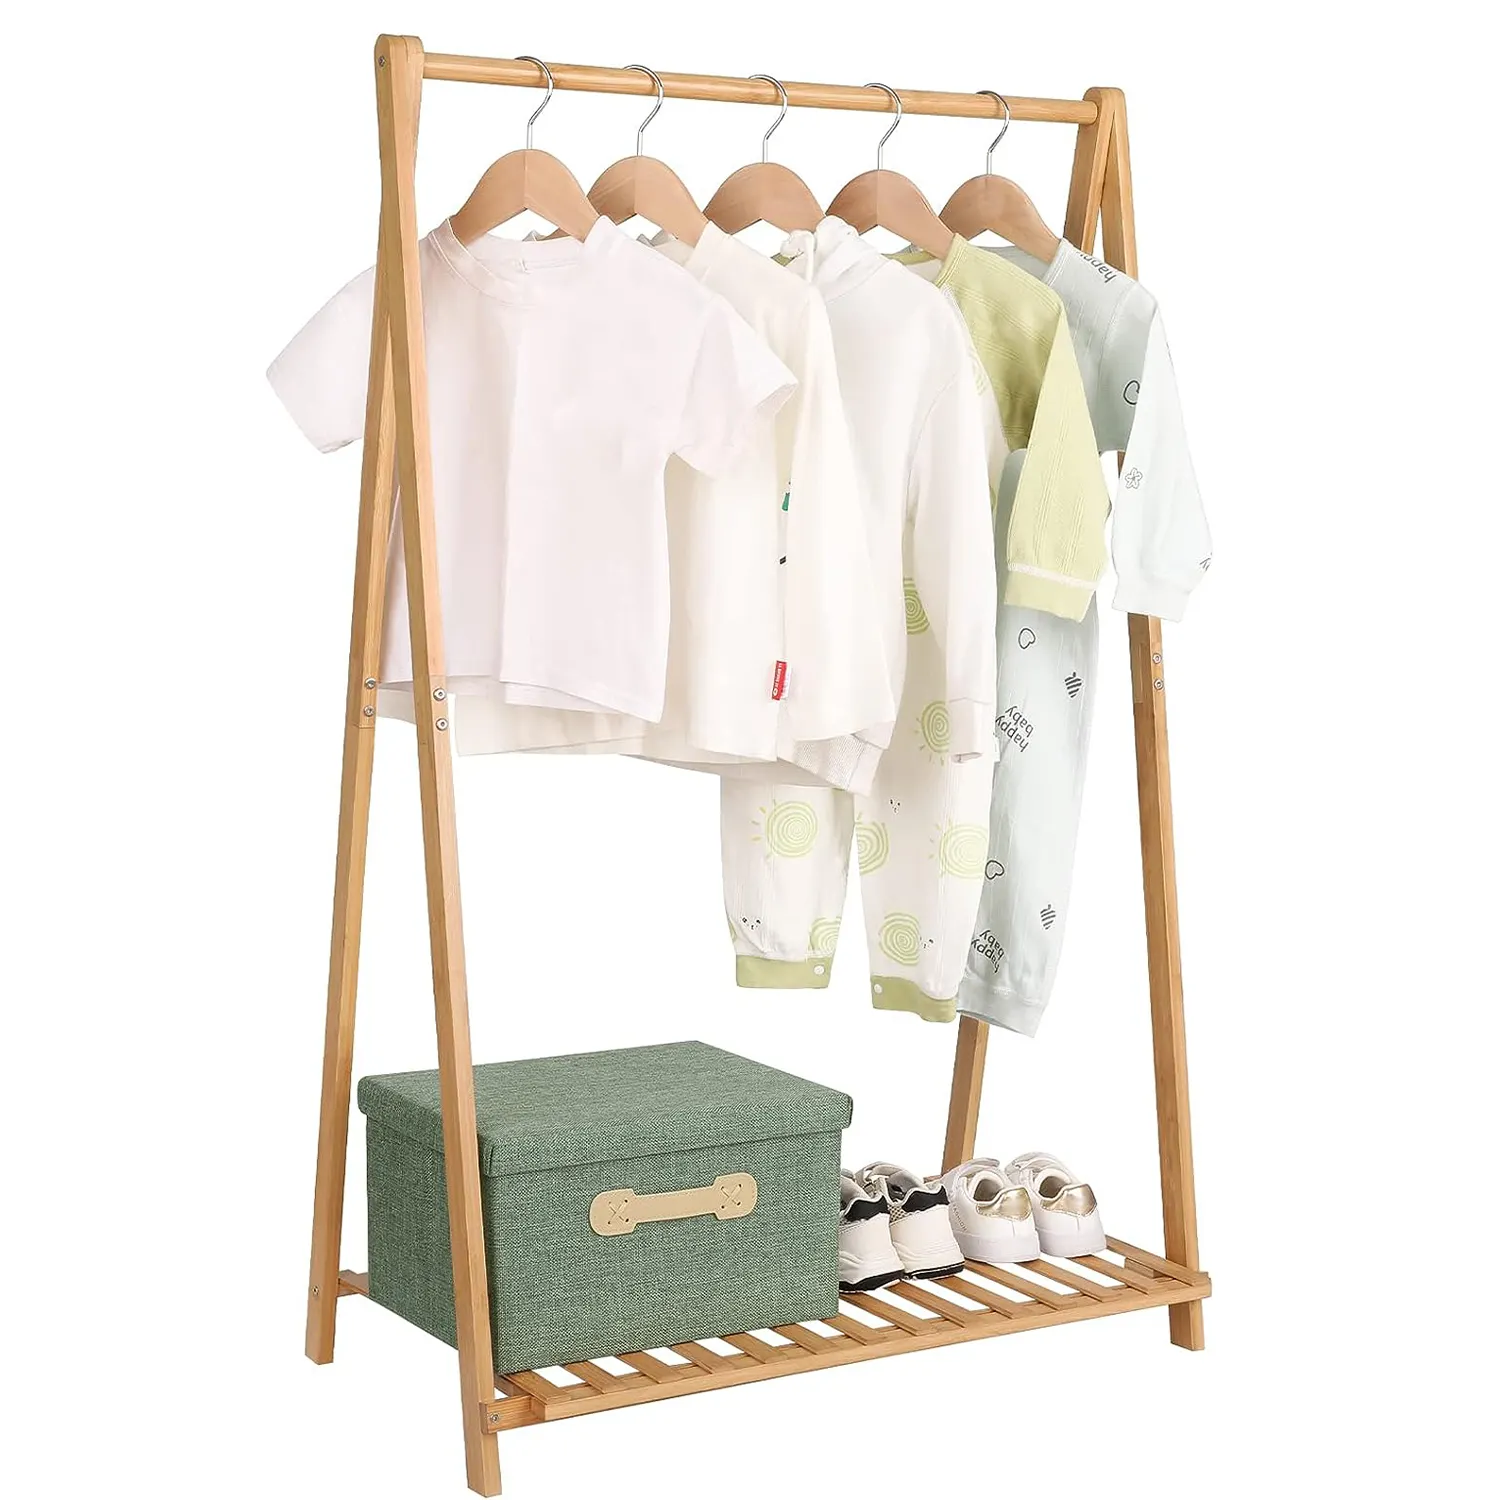 Rak penyimpanan pakaian bambu, rak kain bambu fungsional, 1 tingkat, rak penyimpanan garmen anak untuk kamar tidur balita, pengatur efektif untuk kostum